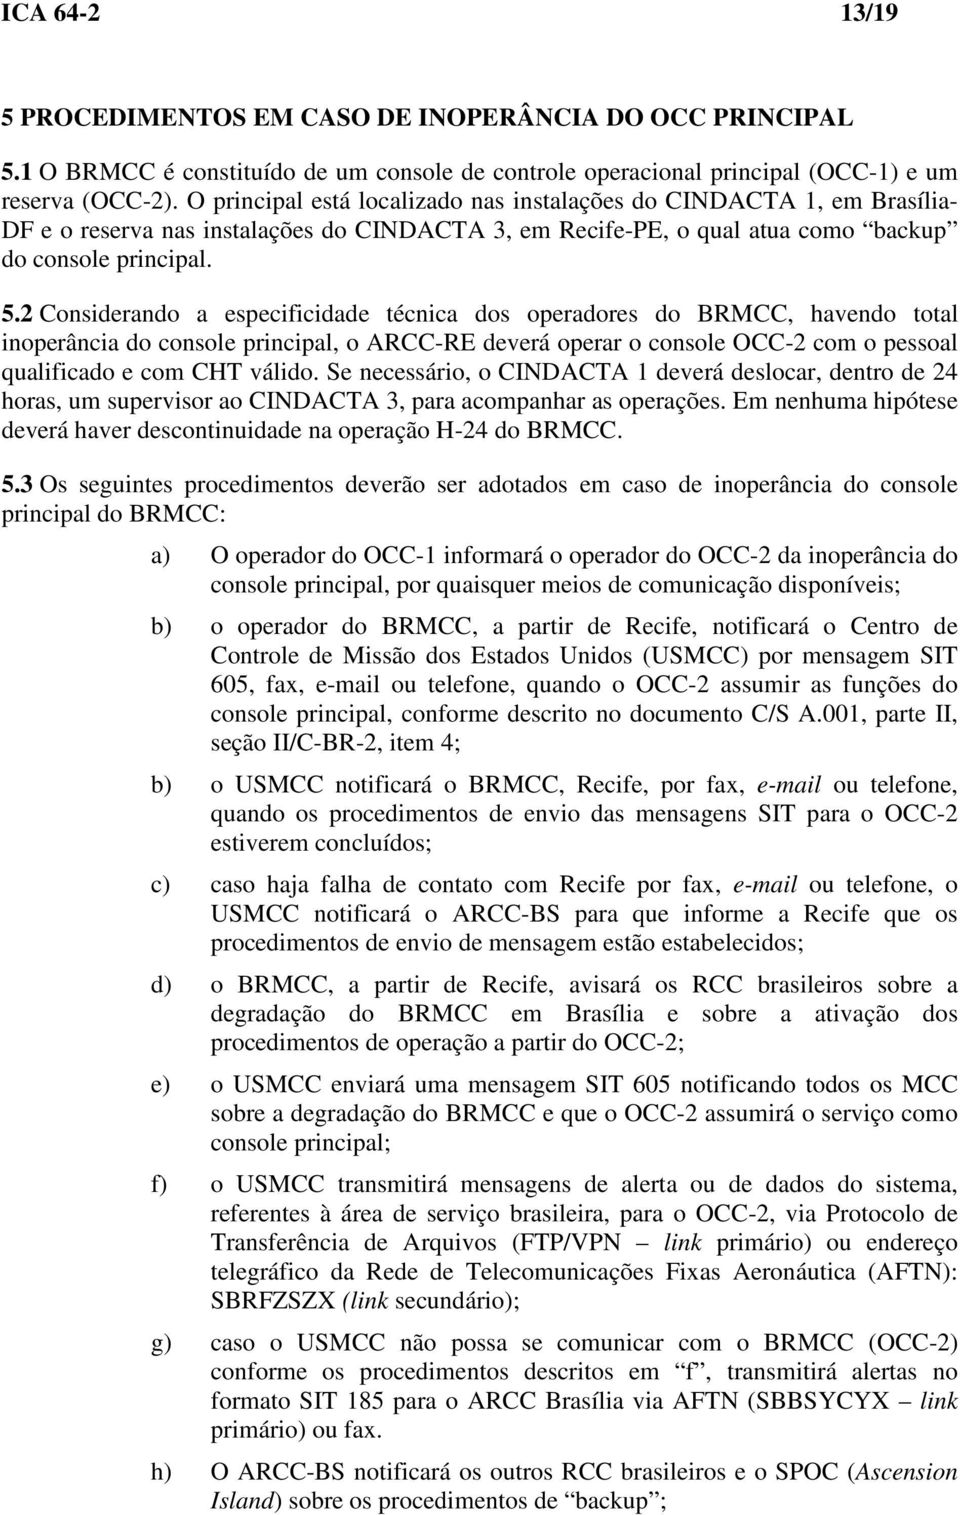 2 Considerando a especificidade técnica dos operadores do BRMCC, havendo total inoperância do console principal, o ARCC-RE deverá operar o console OCC-2 com o pessoal qualificado e com CHT válido.